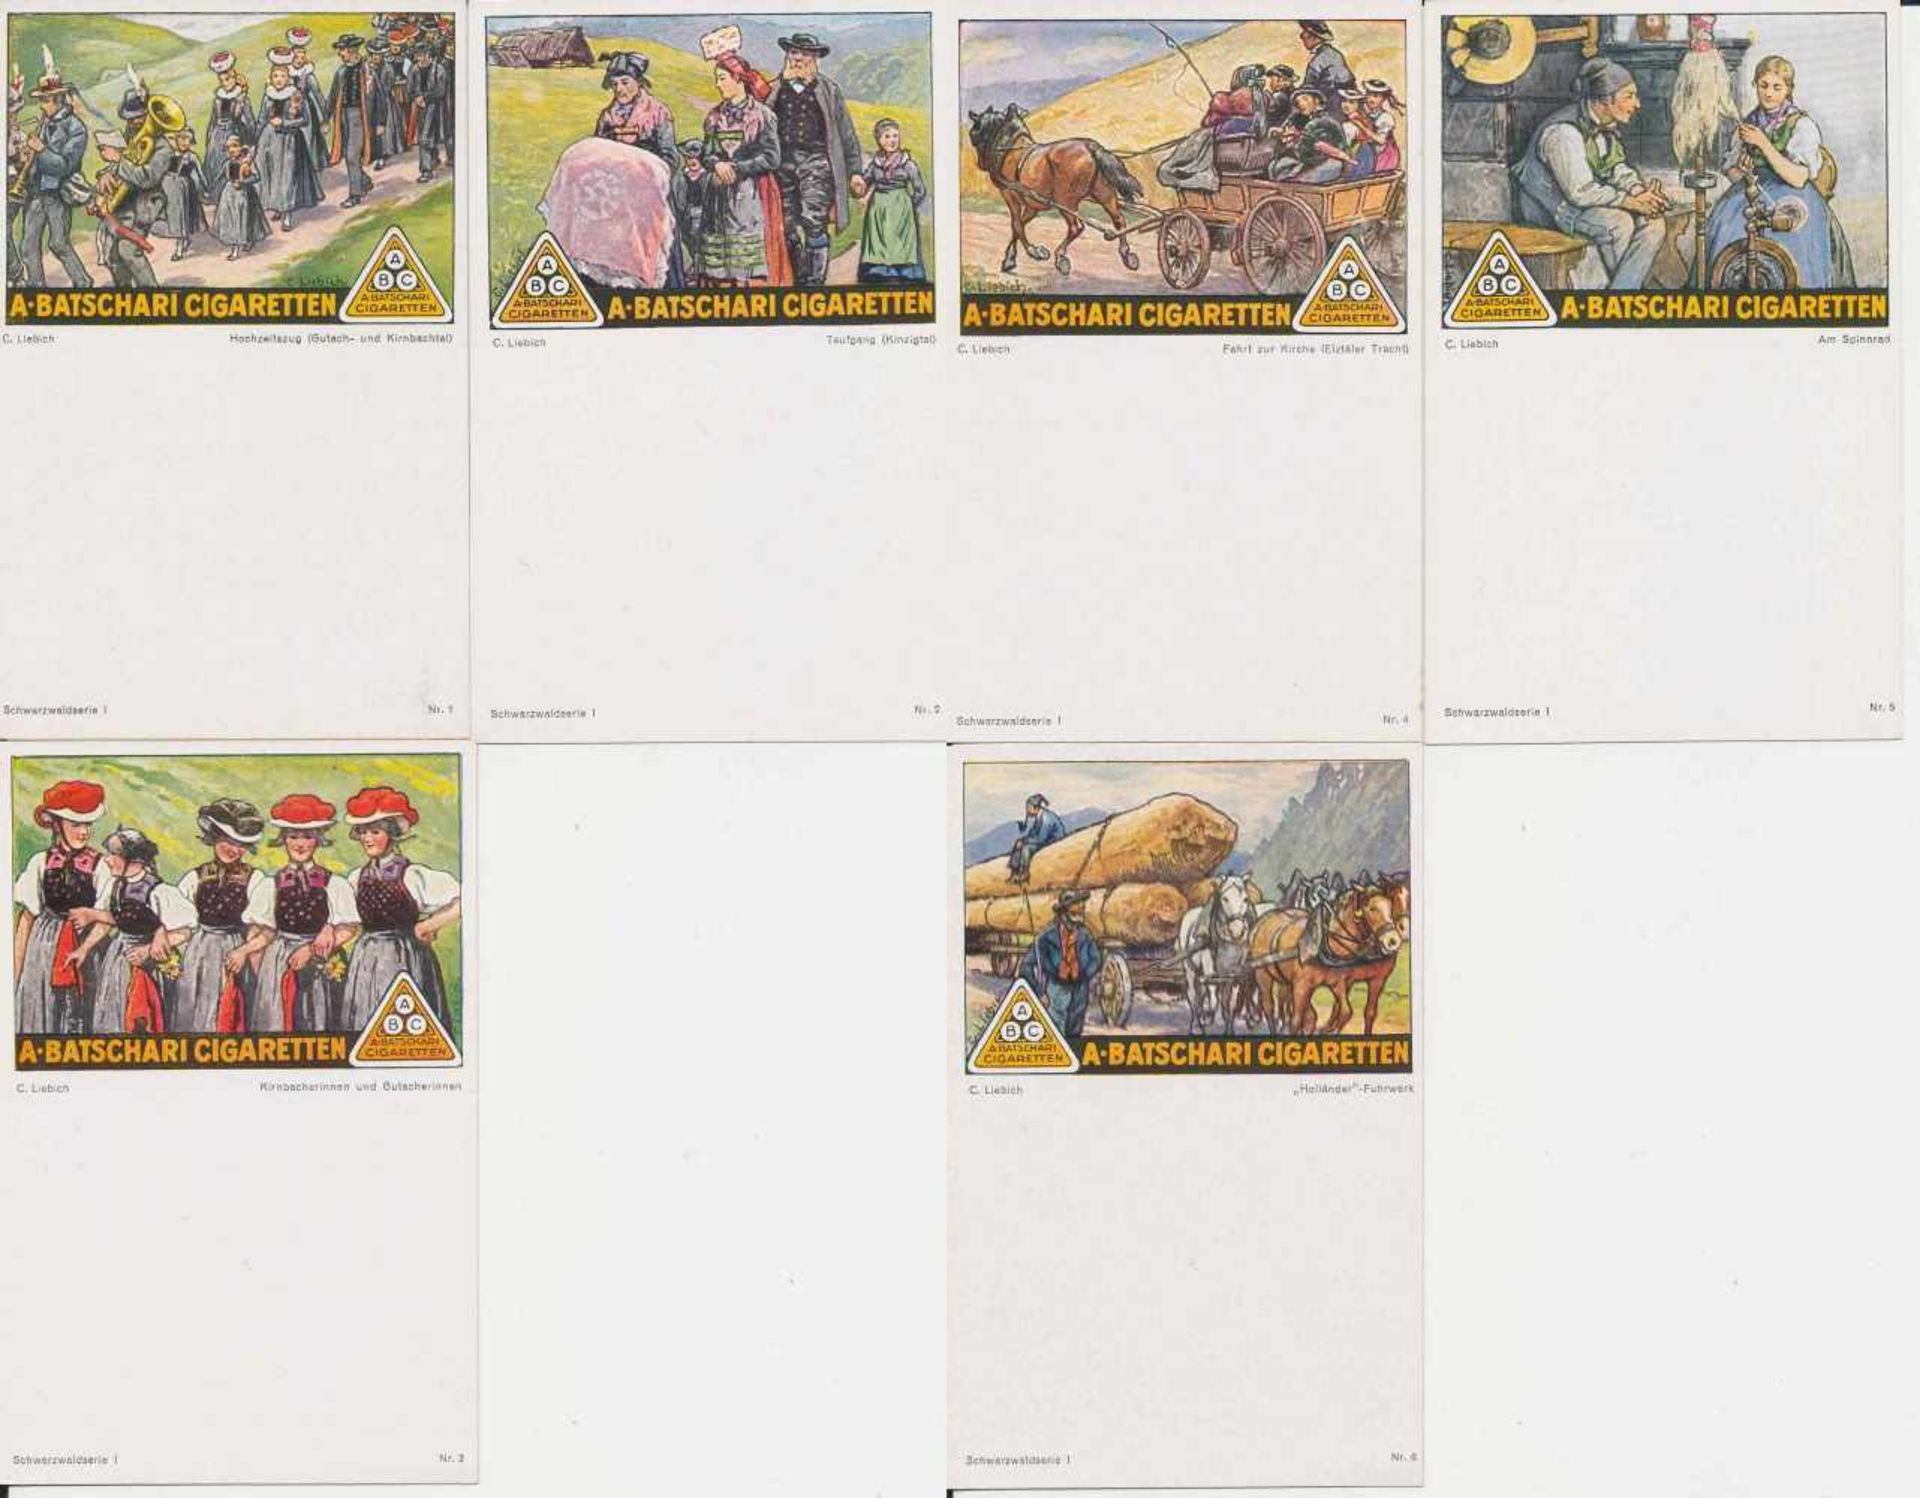 6 Postkarten, kleines Format, col., A. Batschari Cigaretten, Schwarzwaldserie I - Nr. 1-6, von C.